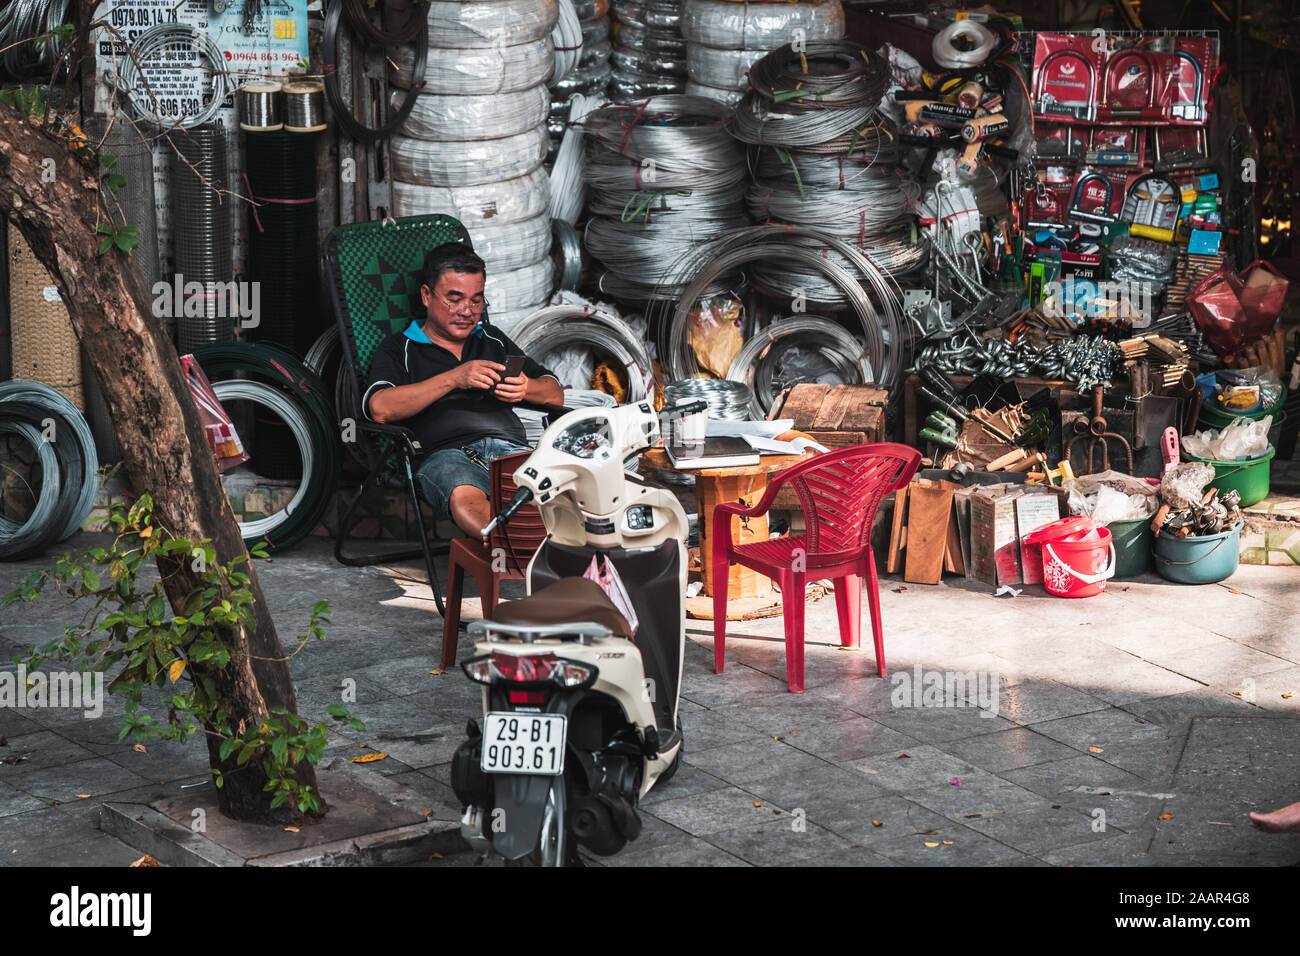 Hanoi, Vietnam - 12 octobre 2019 : Un homme asiatique se trouve affalé dans une chaise à côté de texter un cyclomoteur en évitant le bain chaud de la journée Banque D'Images